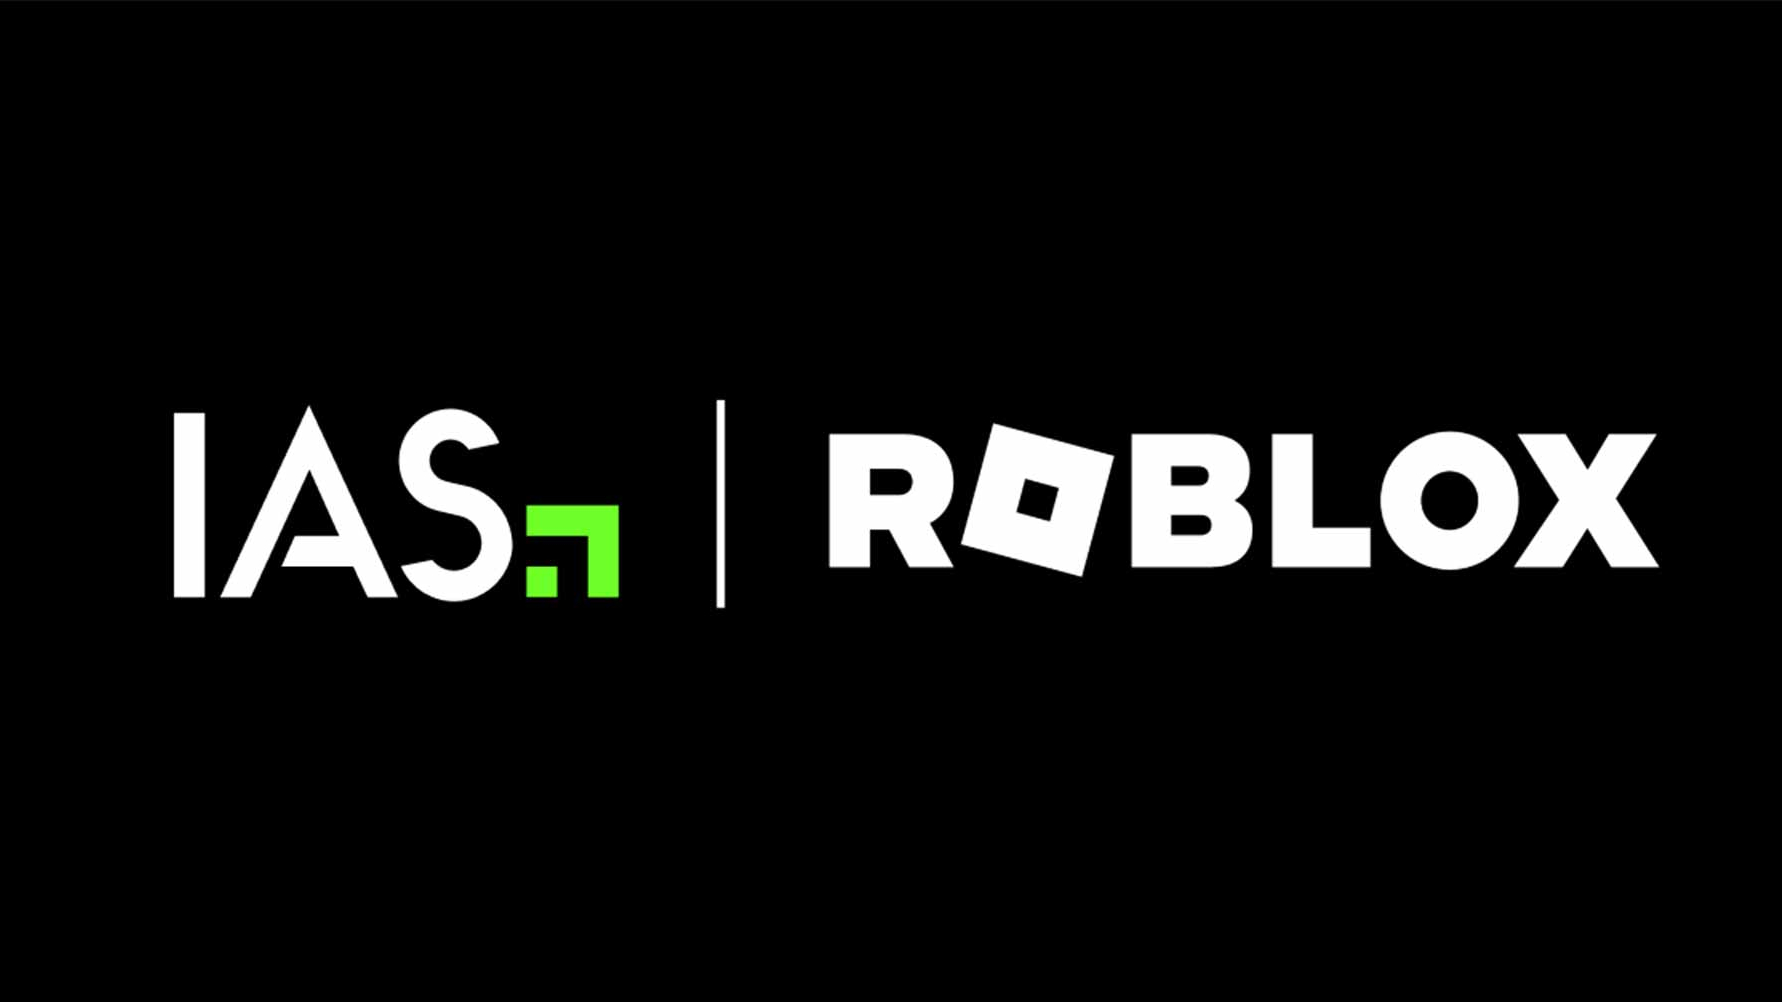 IAS: prima integrazione sul mercato con Roblox per fornire misurazioni immersive in 3D